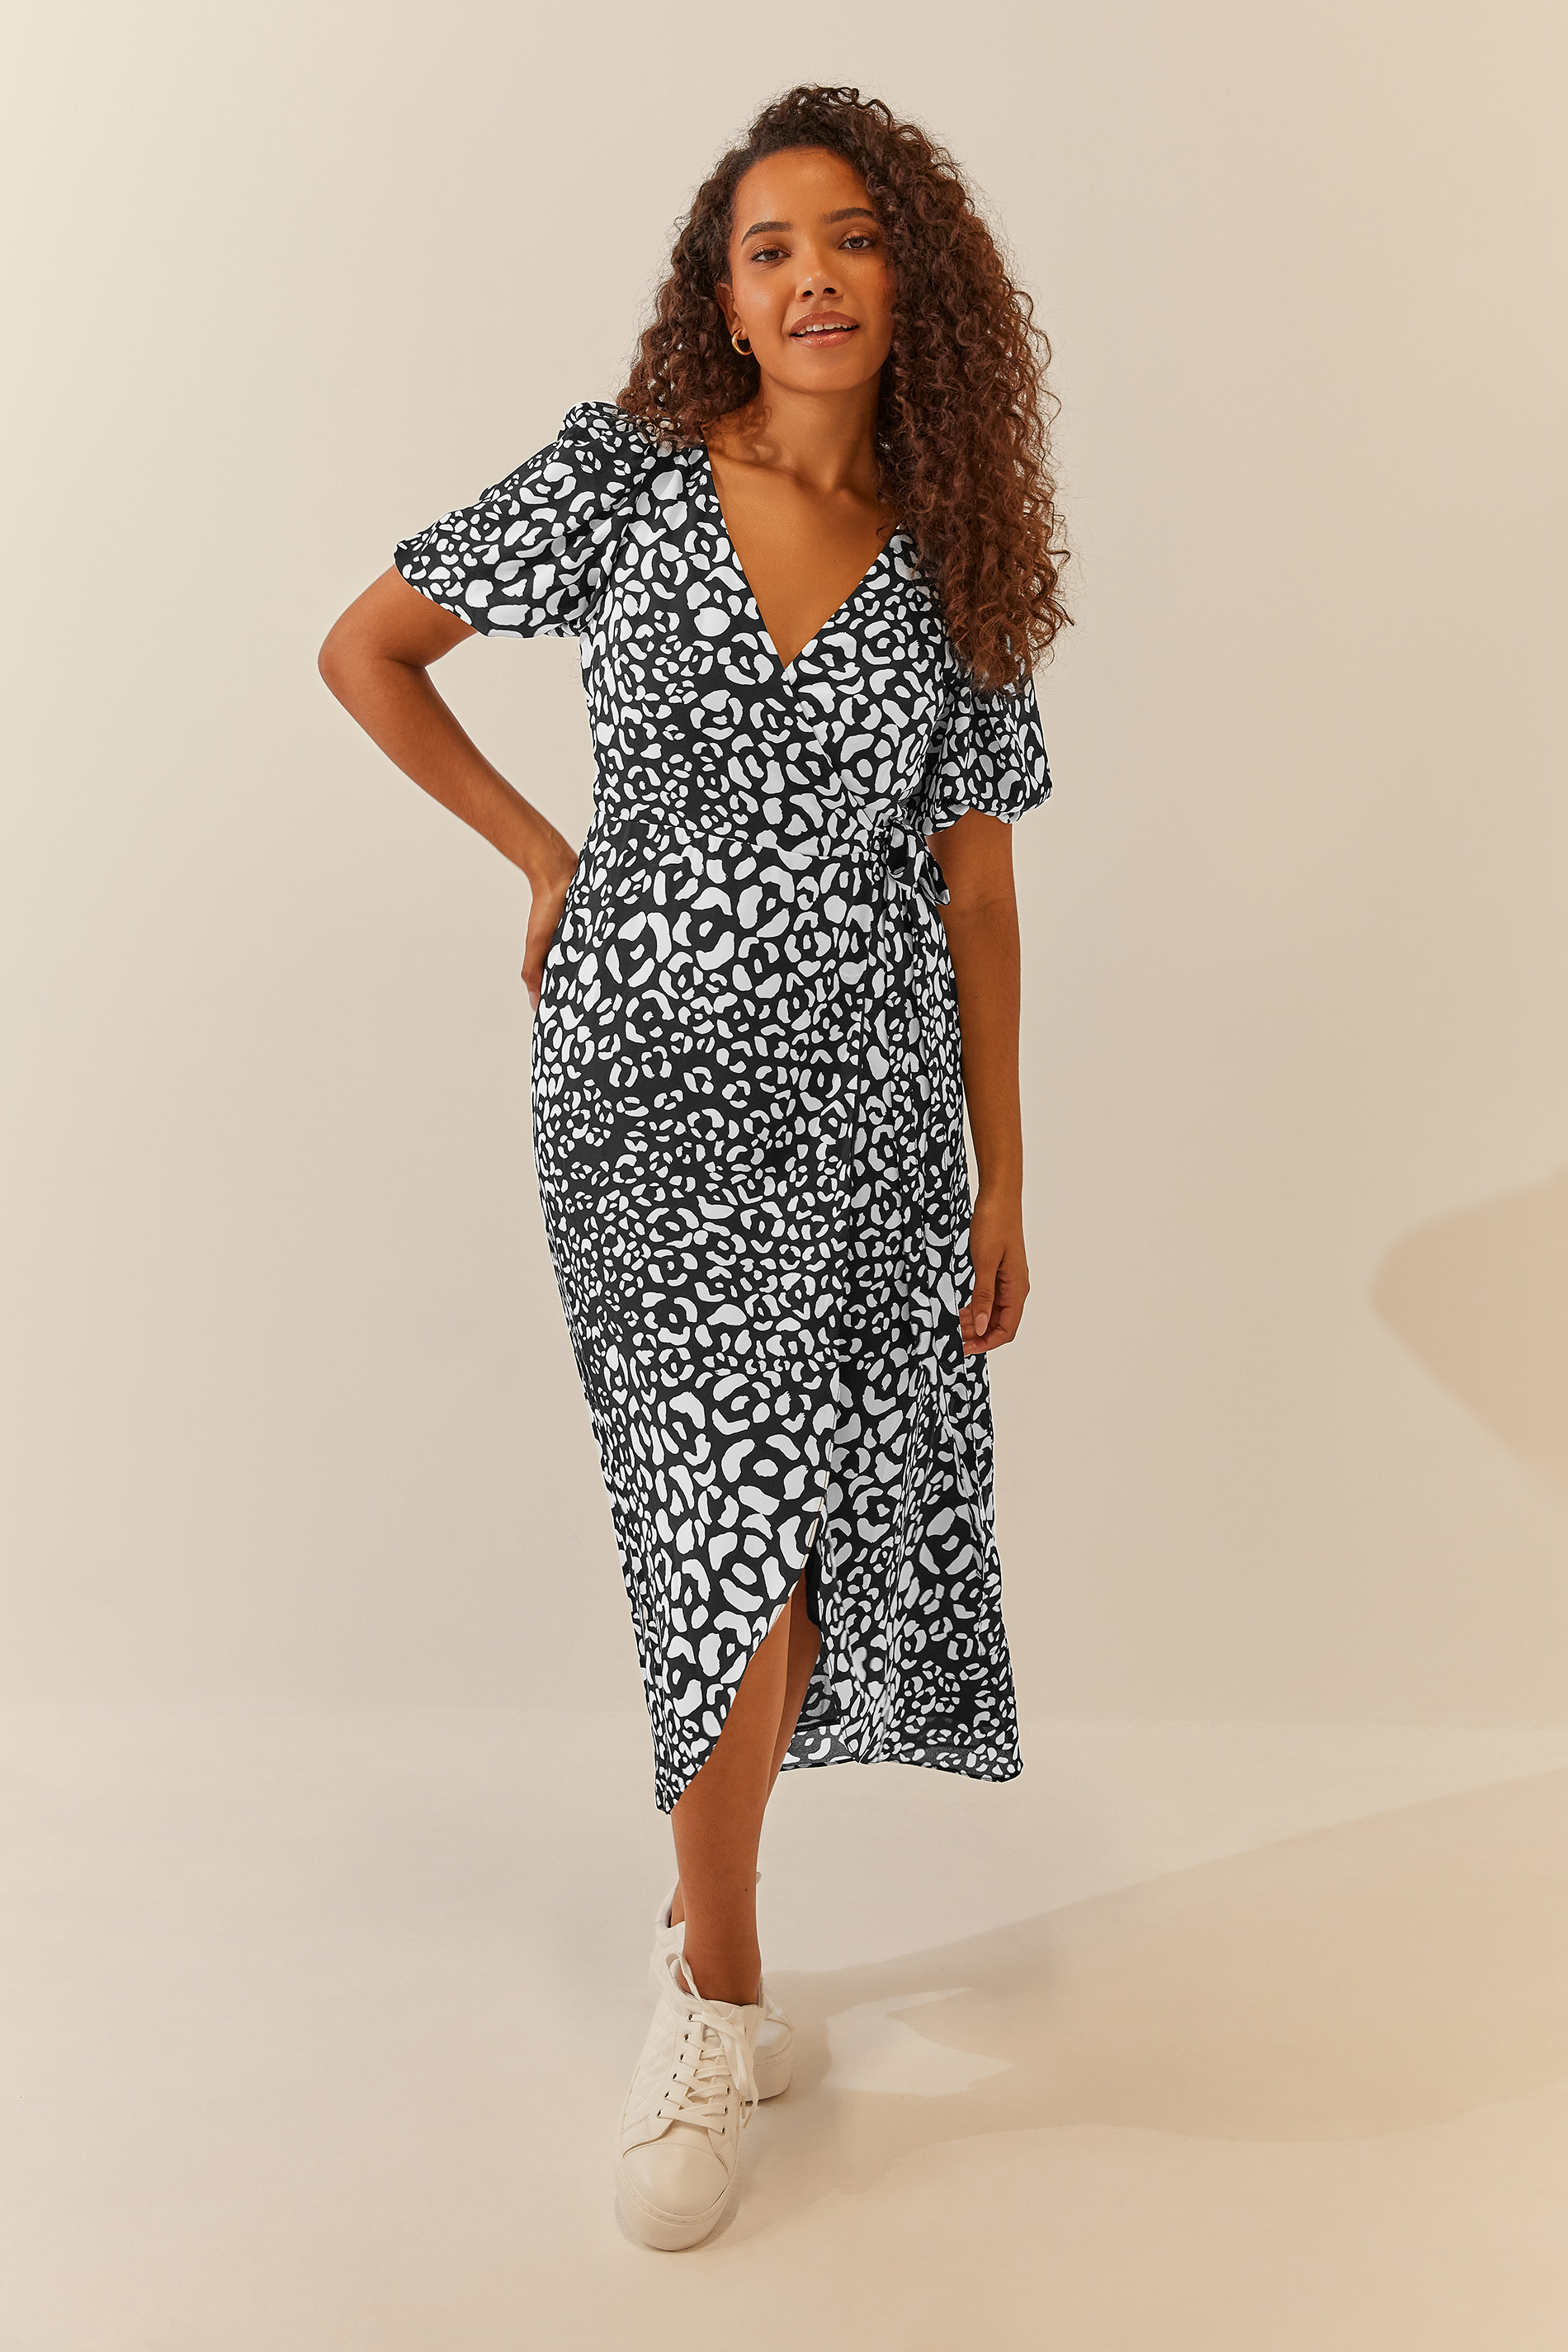 M&Co Black Animal Print Wrap Dress | M&Co 1